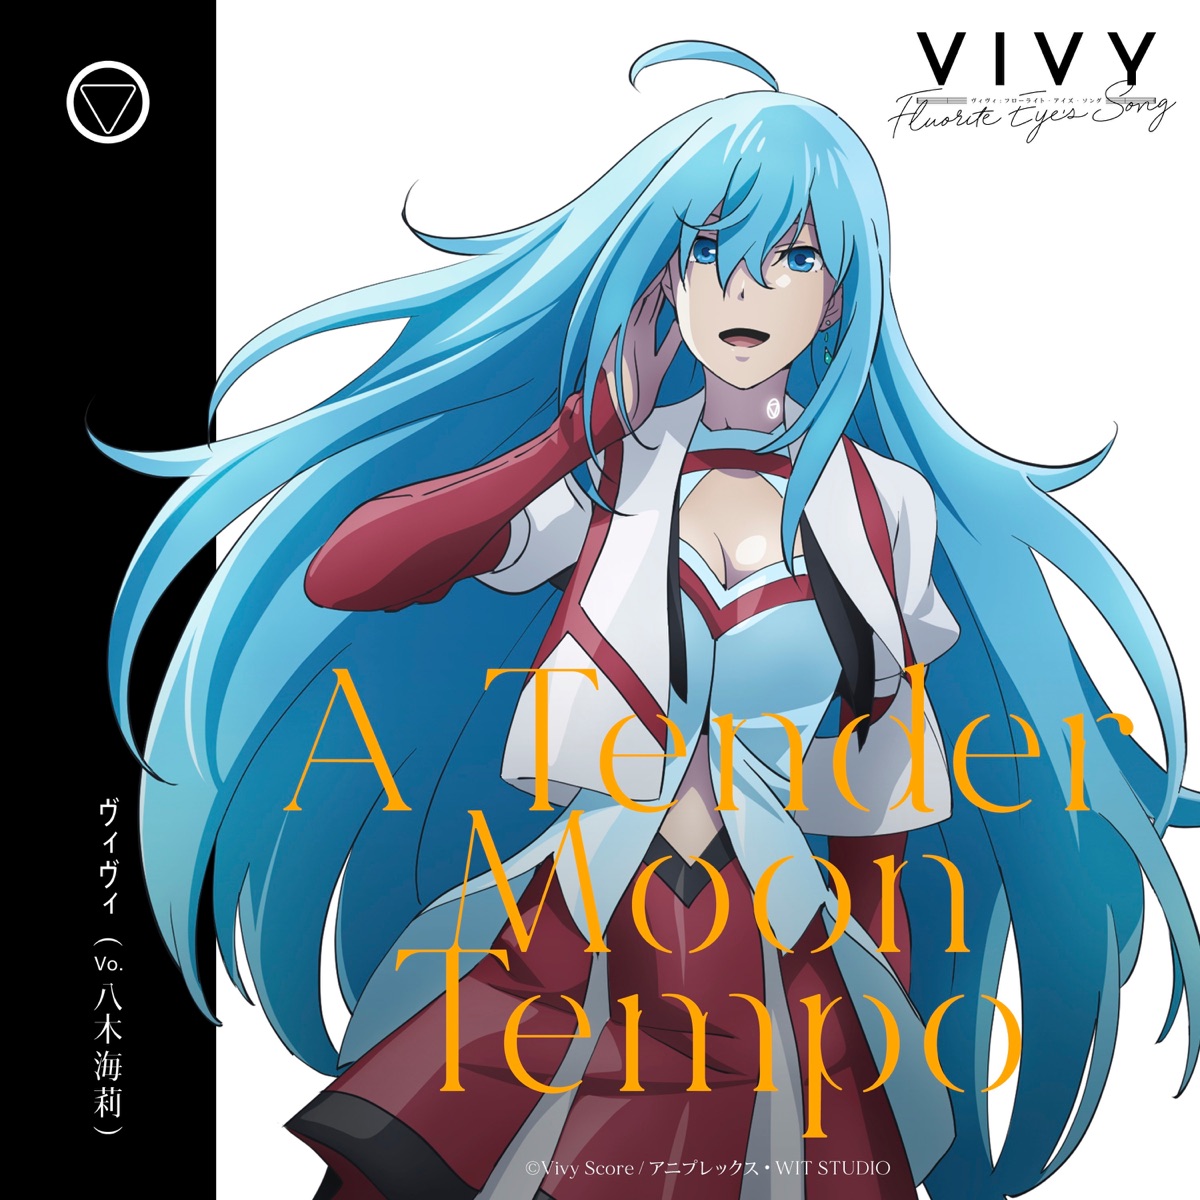 『ヴィヴィ(八木海莉) - A Tender Moon Tempo』収録の『A Tender Moon Tempo』ジャケット